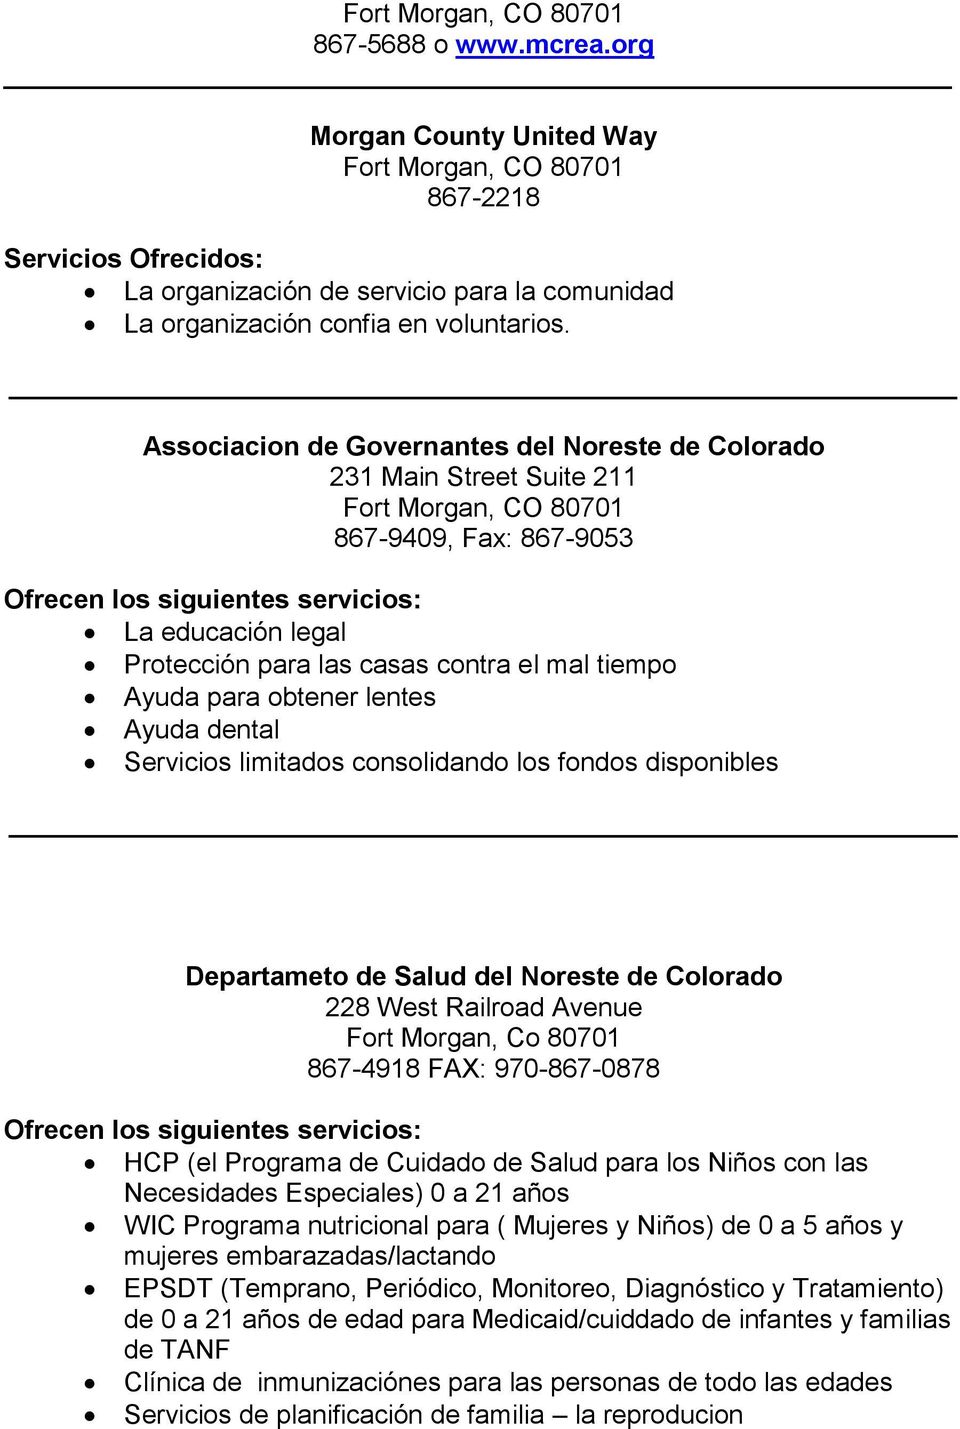 dental Servicios limitados consolidando los fondos disponibles Departameto de Salud del Noreste de Colorado 228 West Railroad Avenue Fort Morgan, Co 80701 867-4918 FAX: 970-867-0878 HCP (el Programa